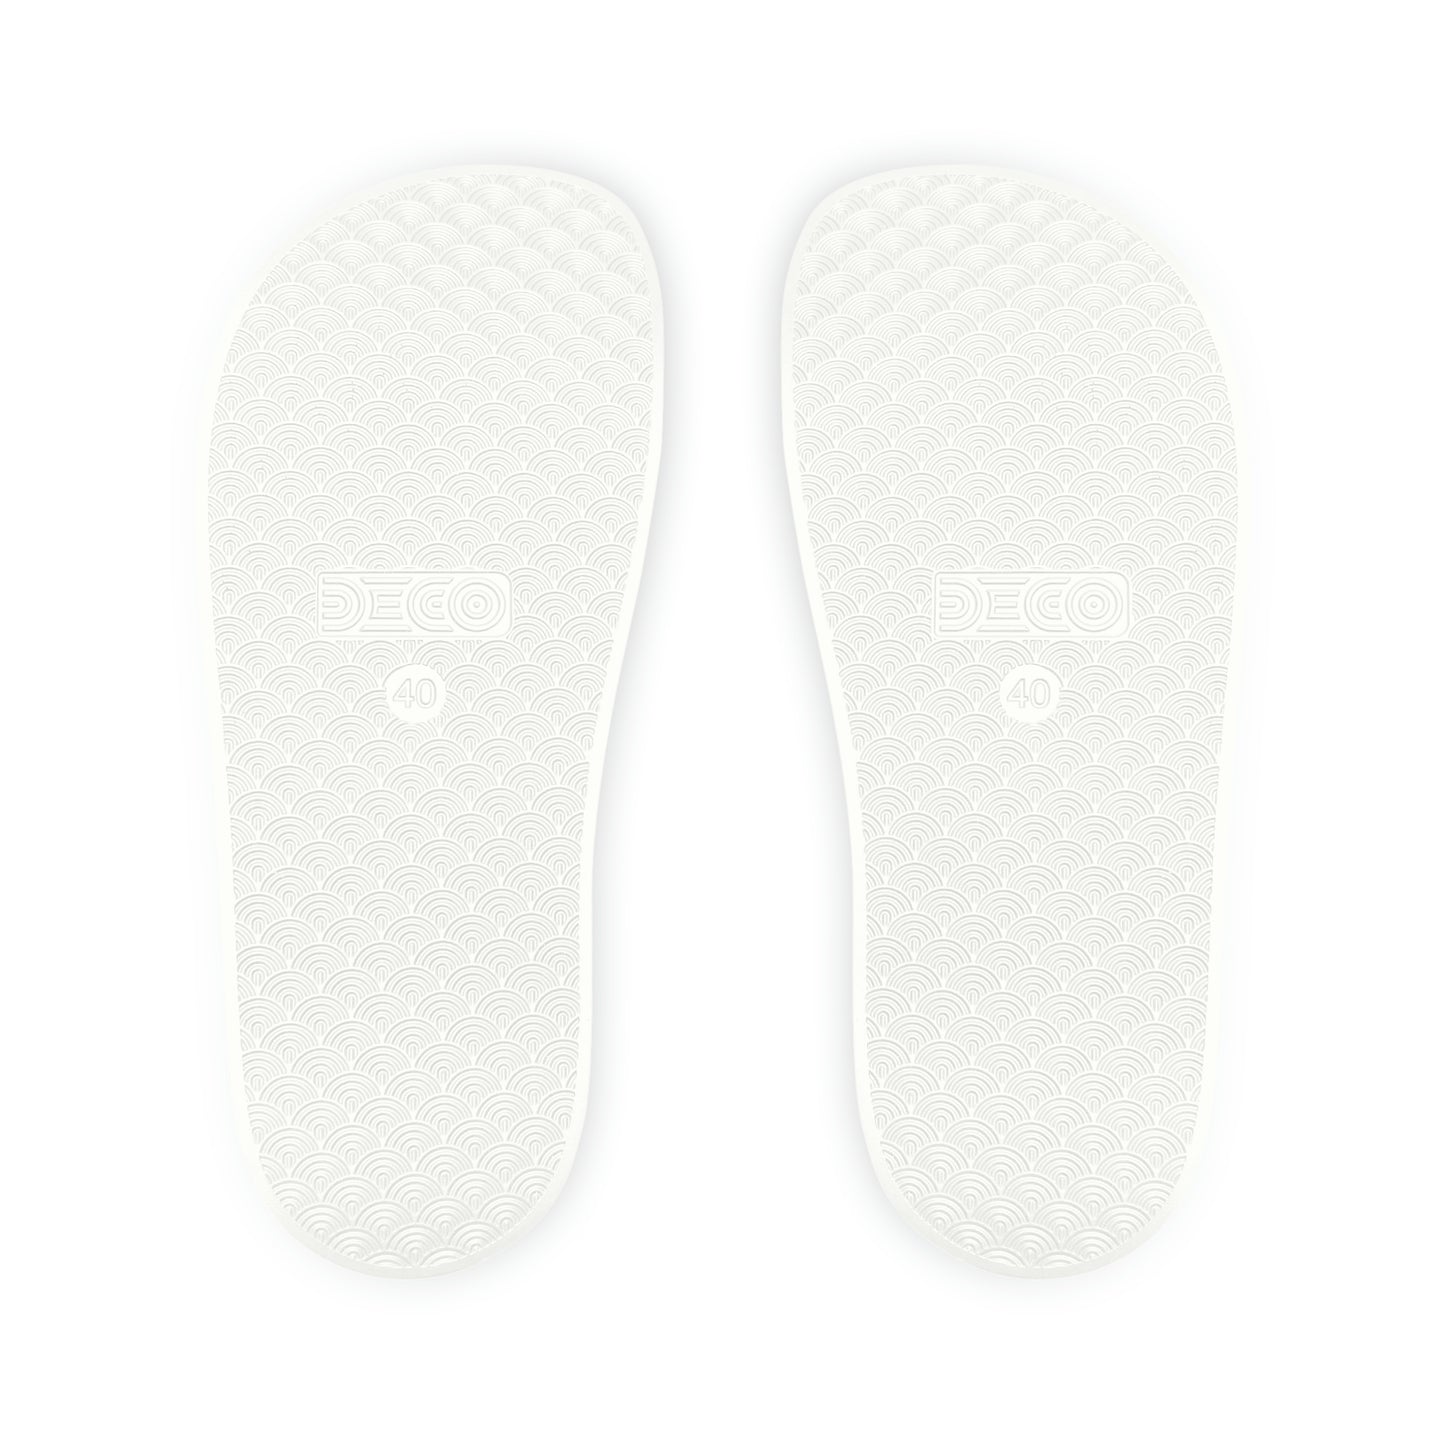 Phyoutoure Da 🐐 Men's  PU Slide Sandals